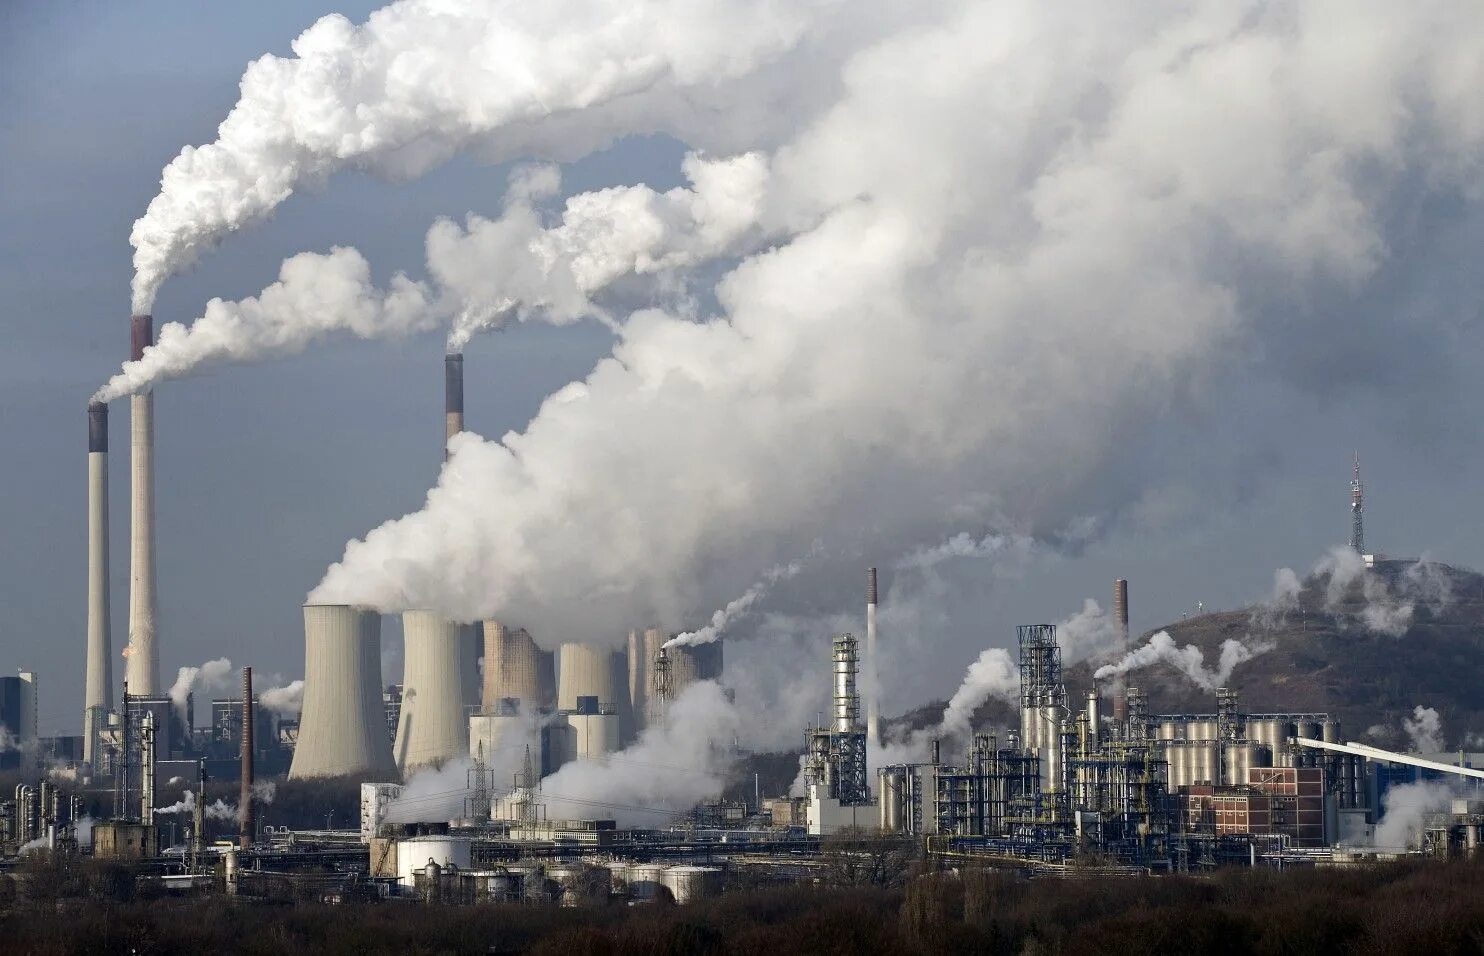 A lot of pollution. Загрязнение воздуха. Промышленные выбросы в атмосферу. Промышленное загрязнение. Атмосферное загрязнение.